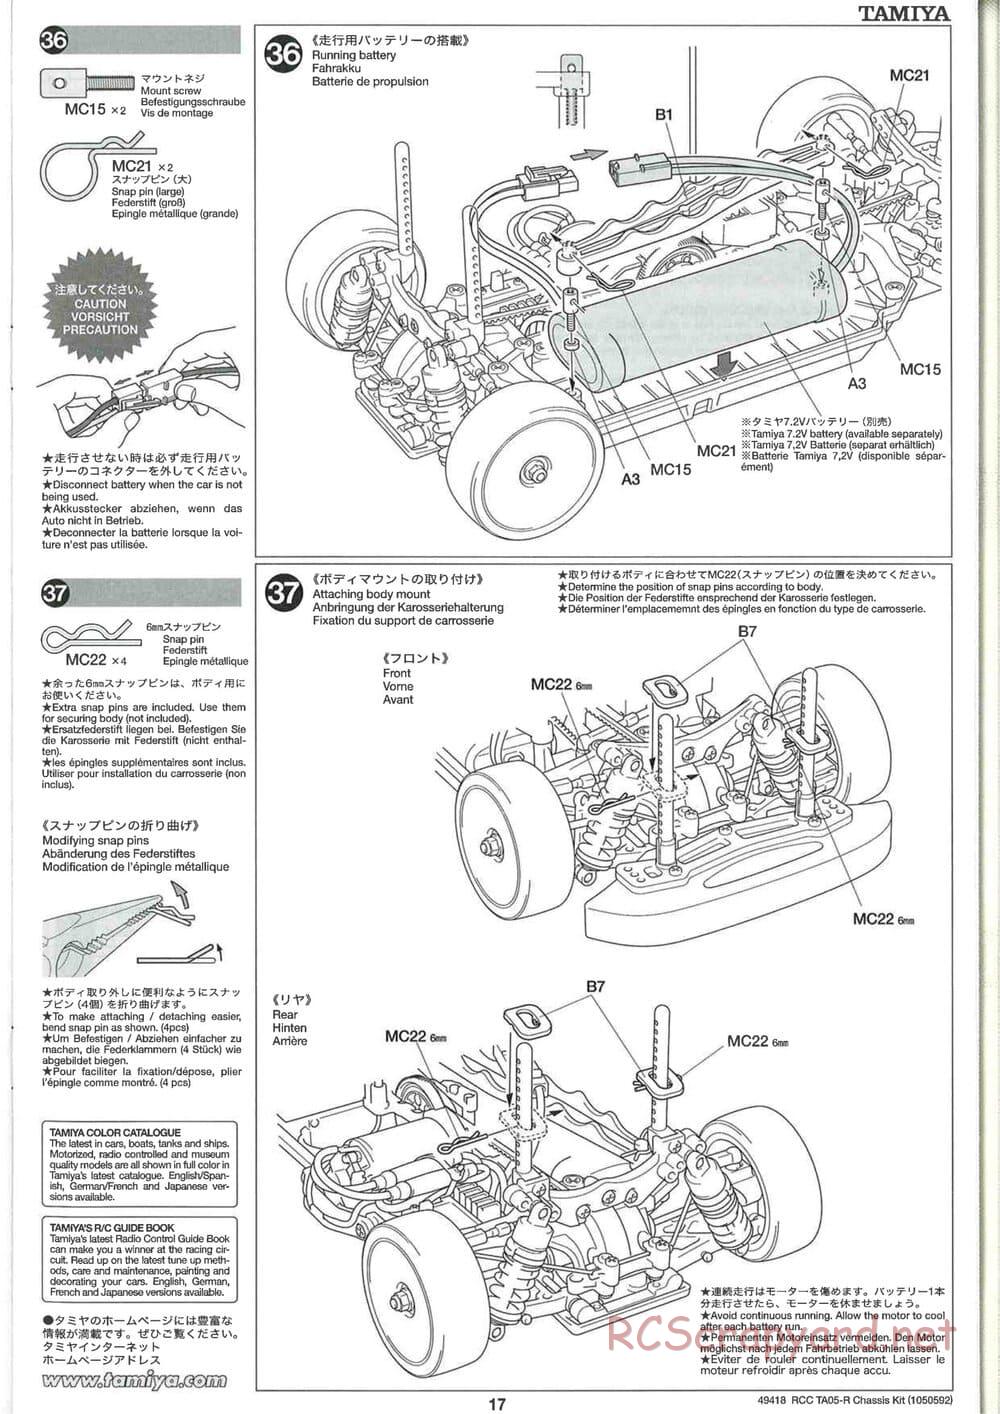 Tamiya - TA05-R Chassis - Manual - Page 17